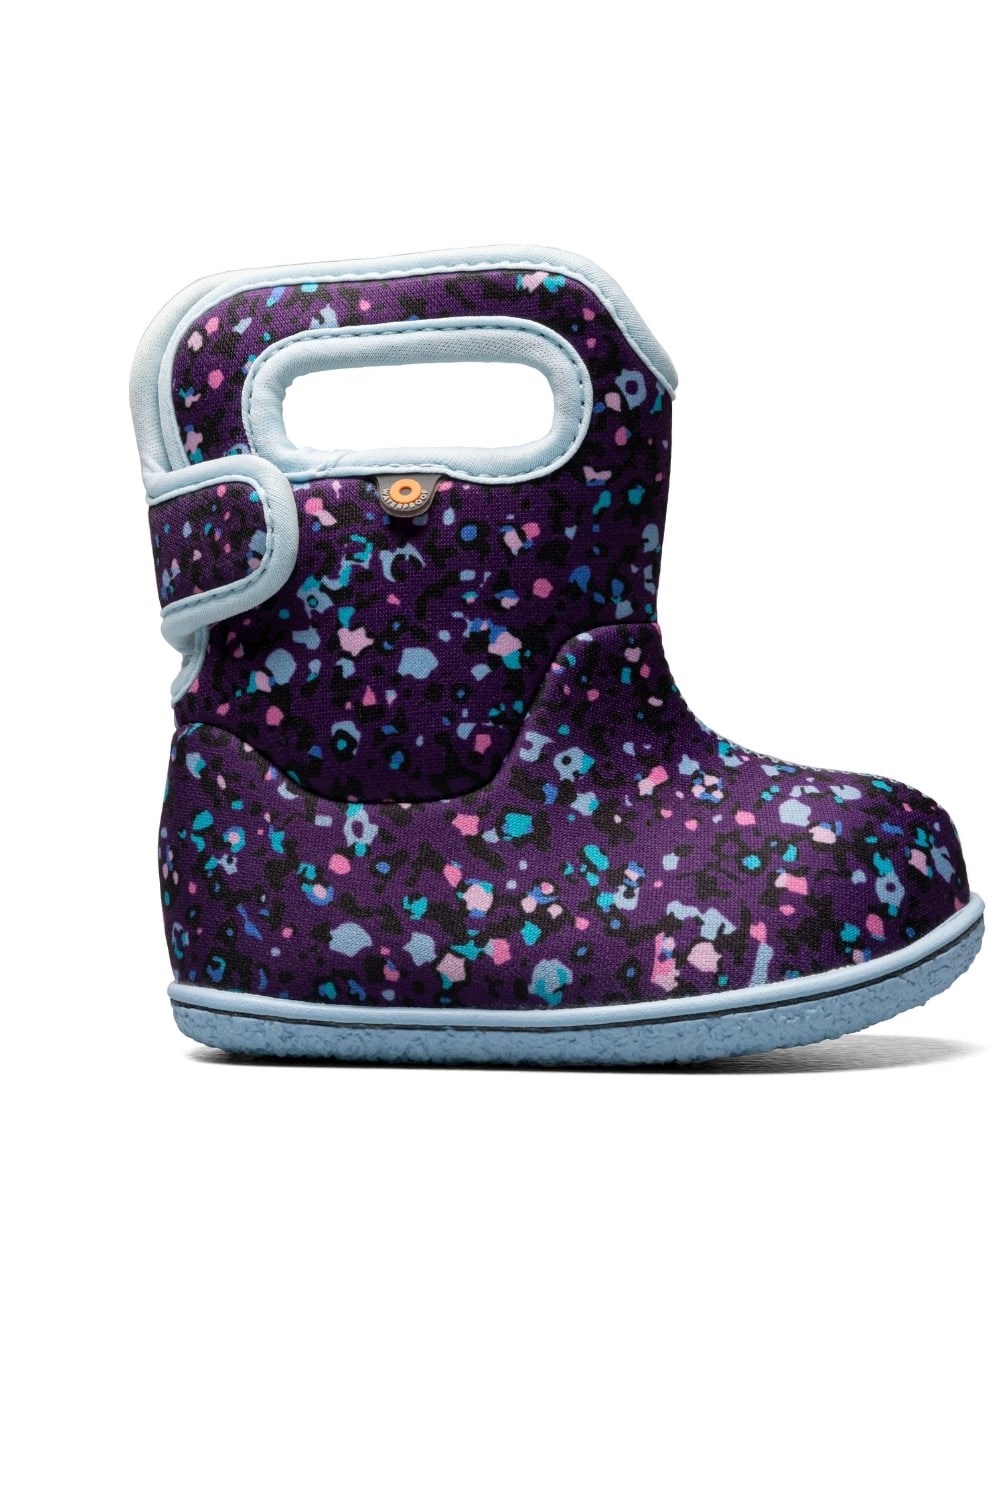 Little Textures Kids Waterproof Boots -